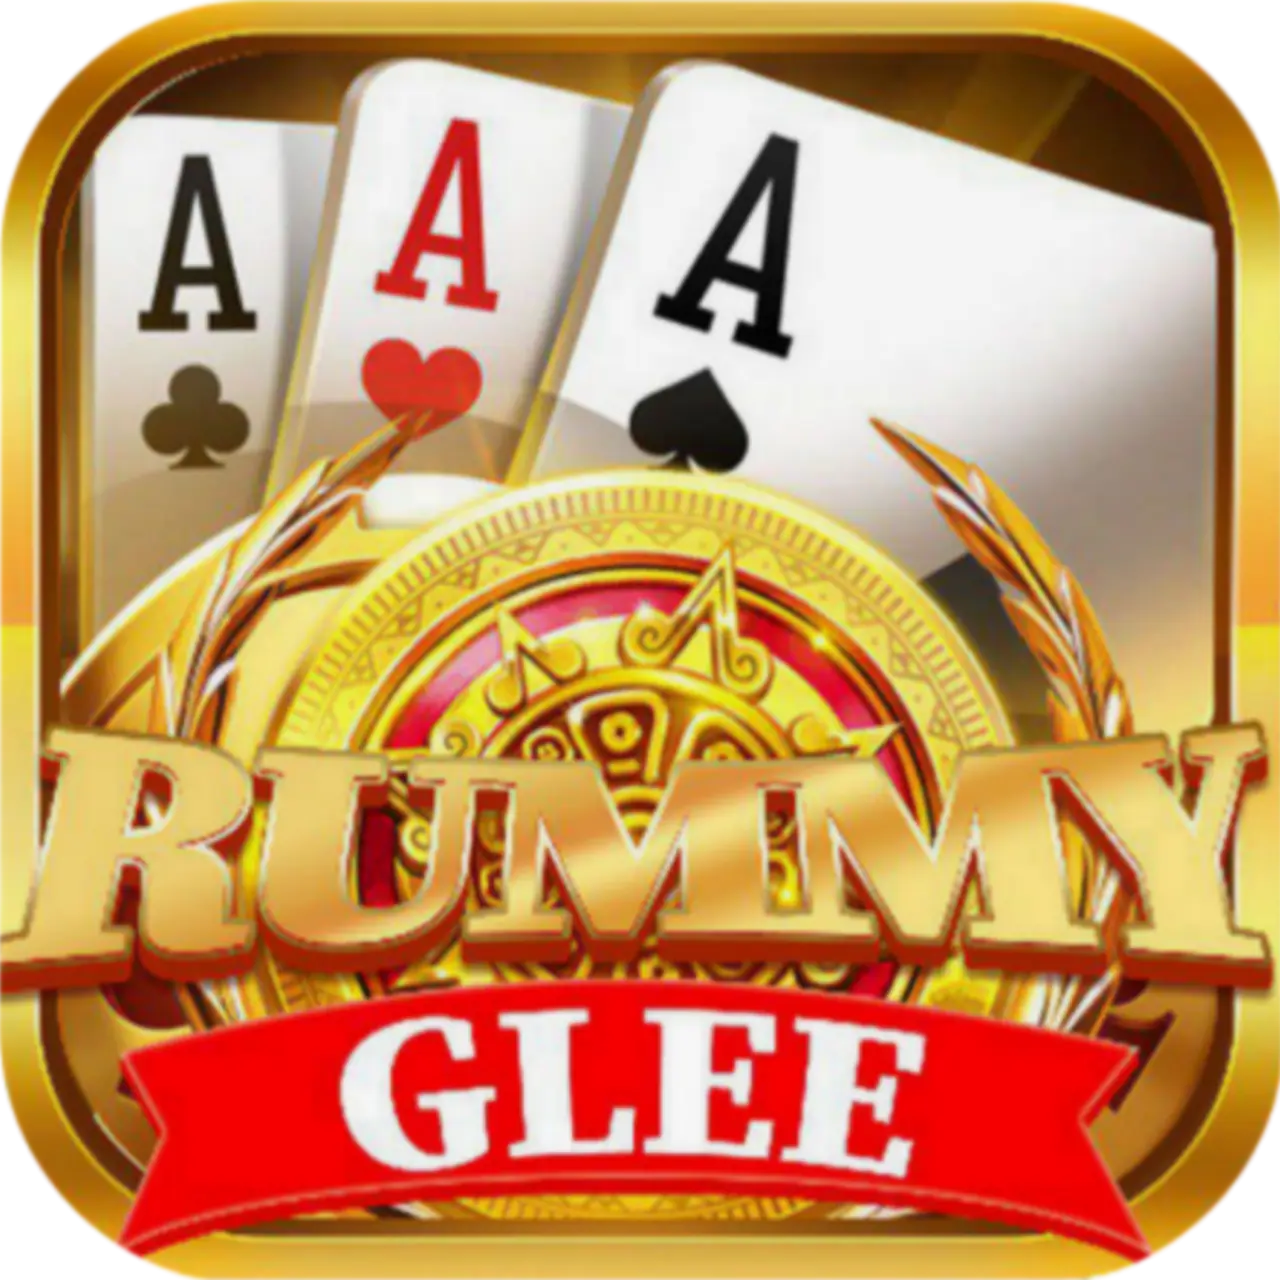 Rummy Glee App Download